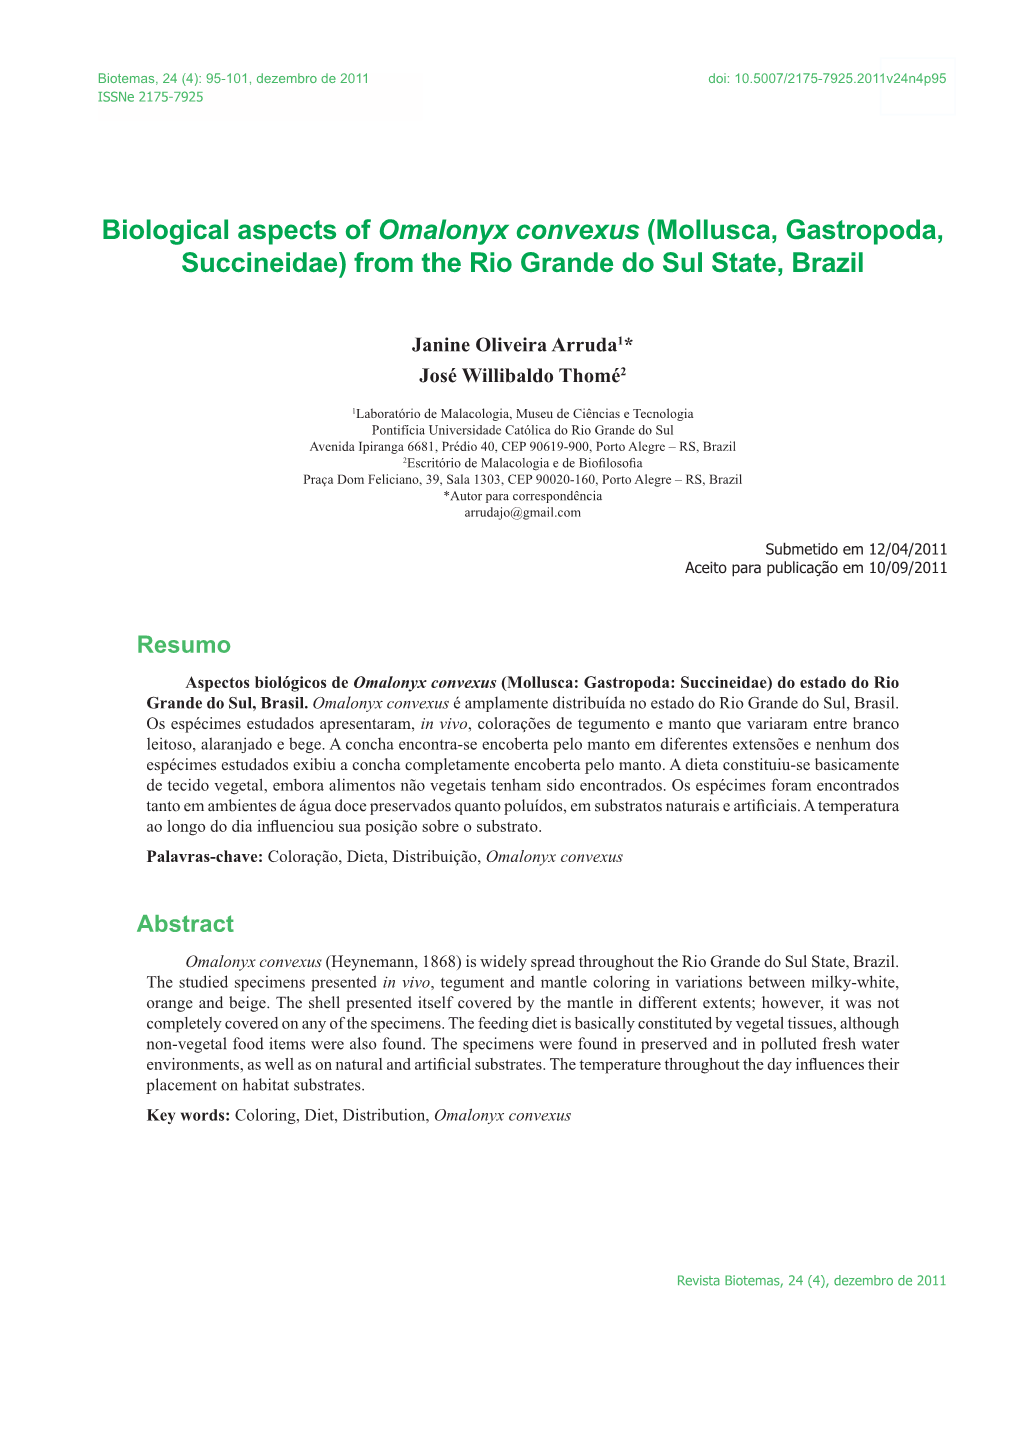 Biological Aspects of Omalonyx Convexus (Mollusca, Gastropoda, Succineidae) from the Rio Grande Do Sul State, Brazil